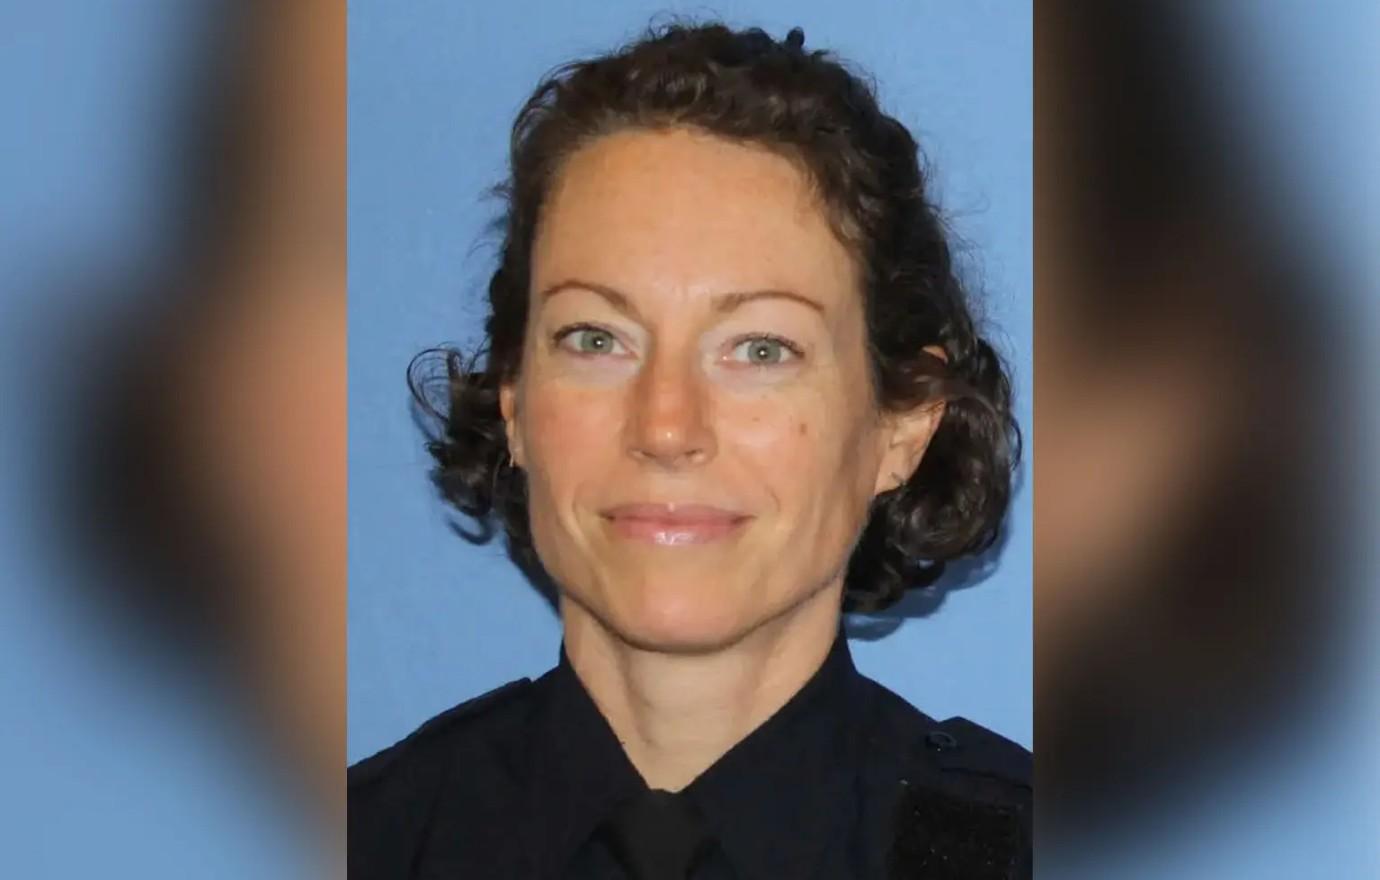 Cincinnati Police Officer Fired After Dashcam Captured Racial Slurs